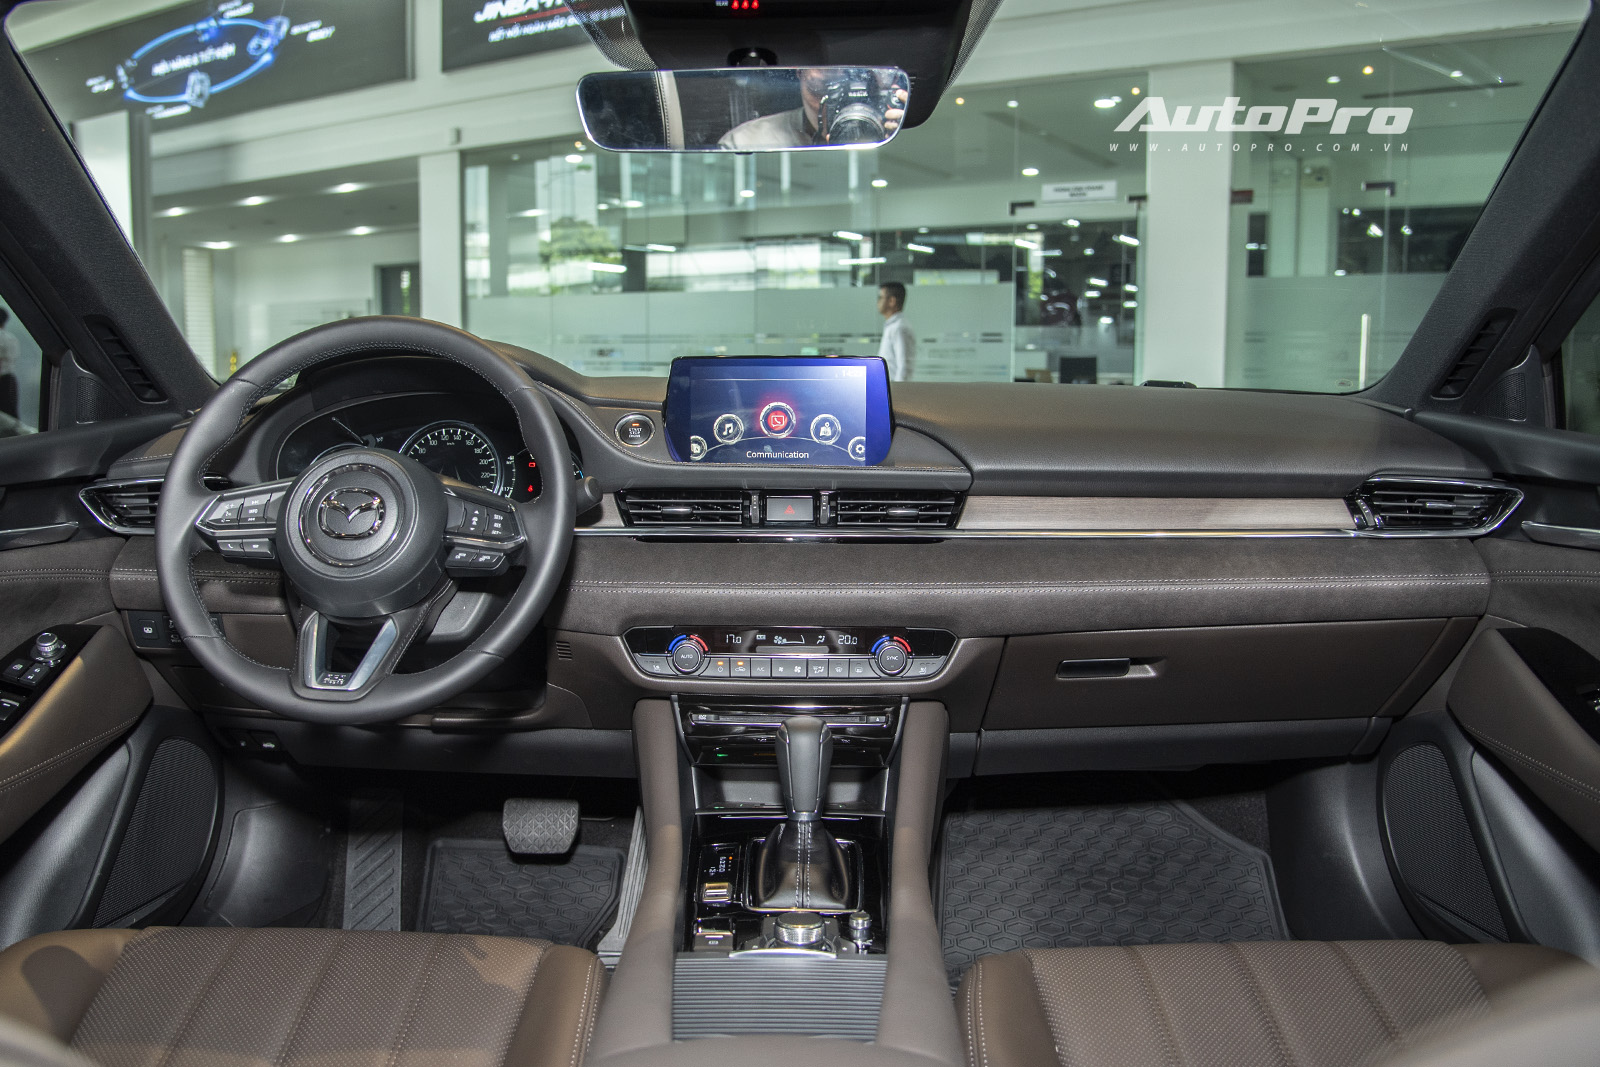 Ra mắt Mazda6 2020: Thêm loạt công nghệ, giá ‘rẻ như hạng C’ - Ảnh 3.